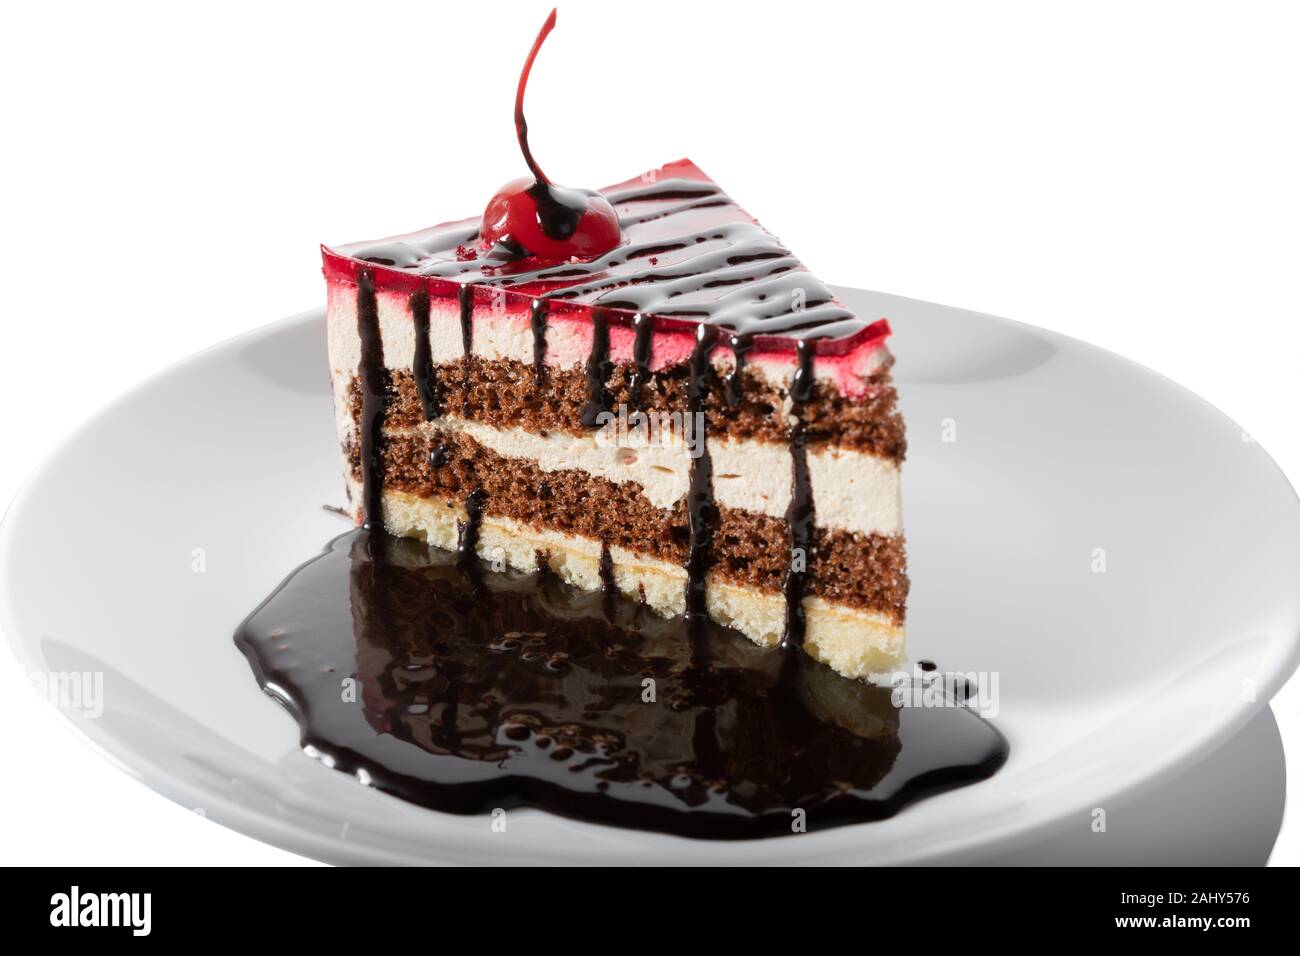 Lecker Kuchen mit Schokolade Topping auf weißem Hintergrund. Stockfoto